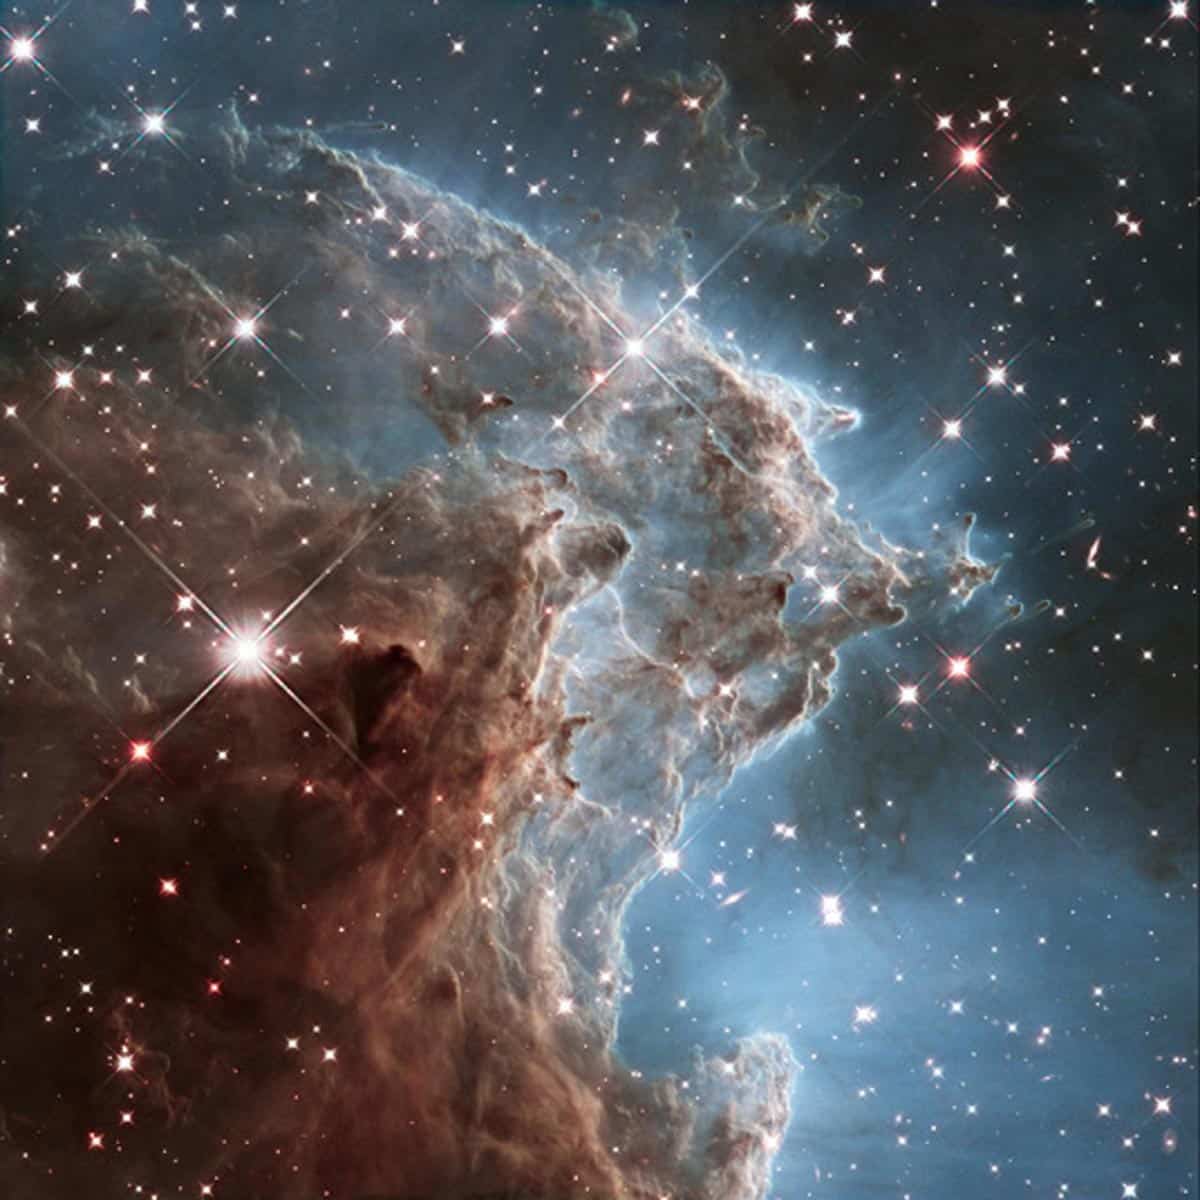 20. Image d'une partie de NGC 2174, également connu sous le nom de la nébuleuse tête de singe. Cette photo a été utilisée pour fêter les 24 ans en orbite de Hubble (Photo : NASA/ESA/Hubble)